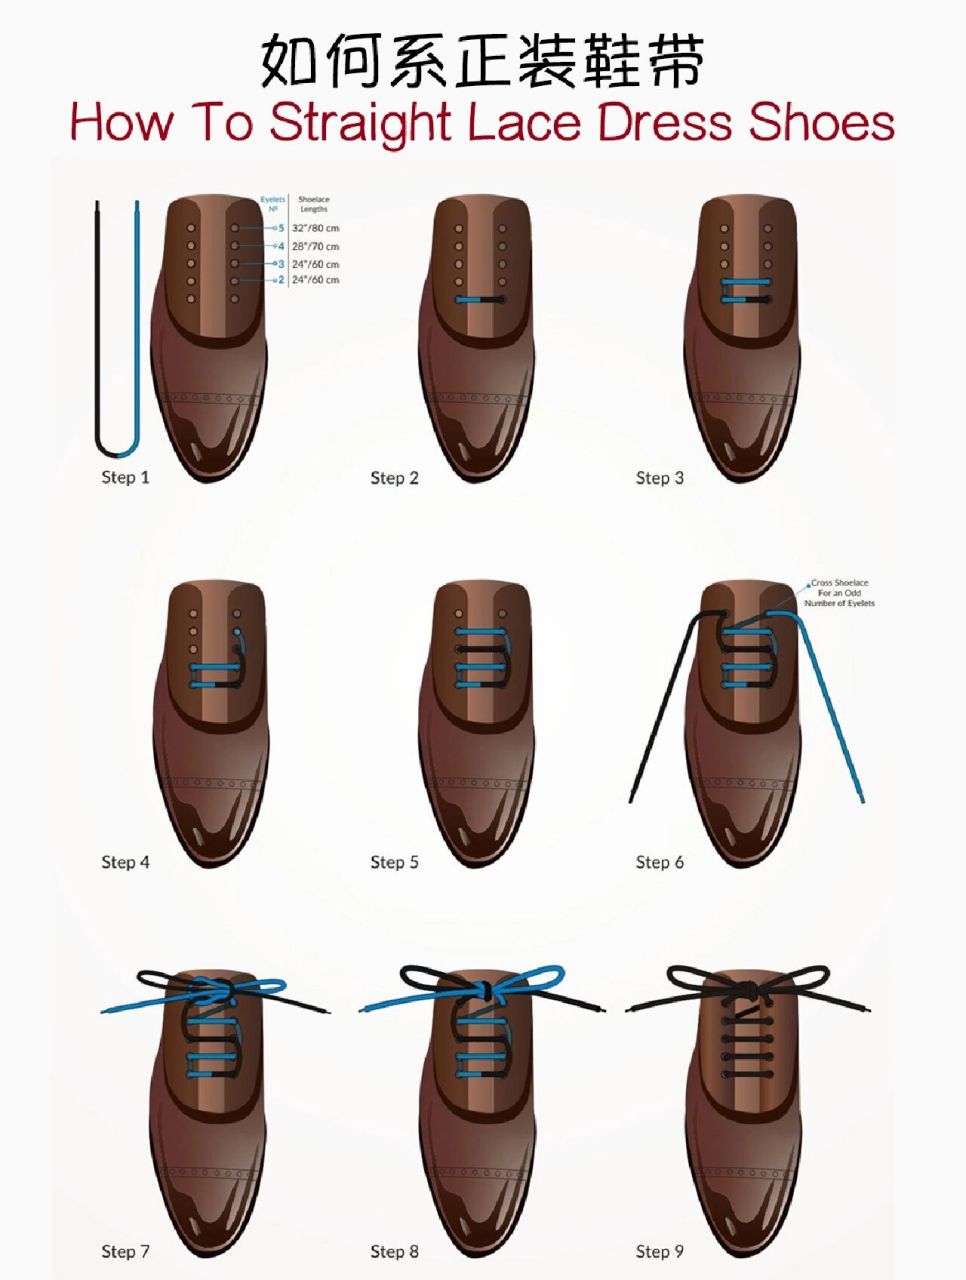 二孔休闲皮鞋系法图解图片